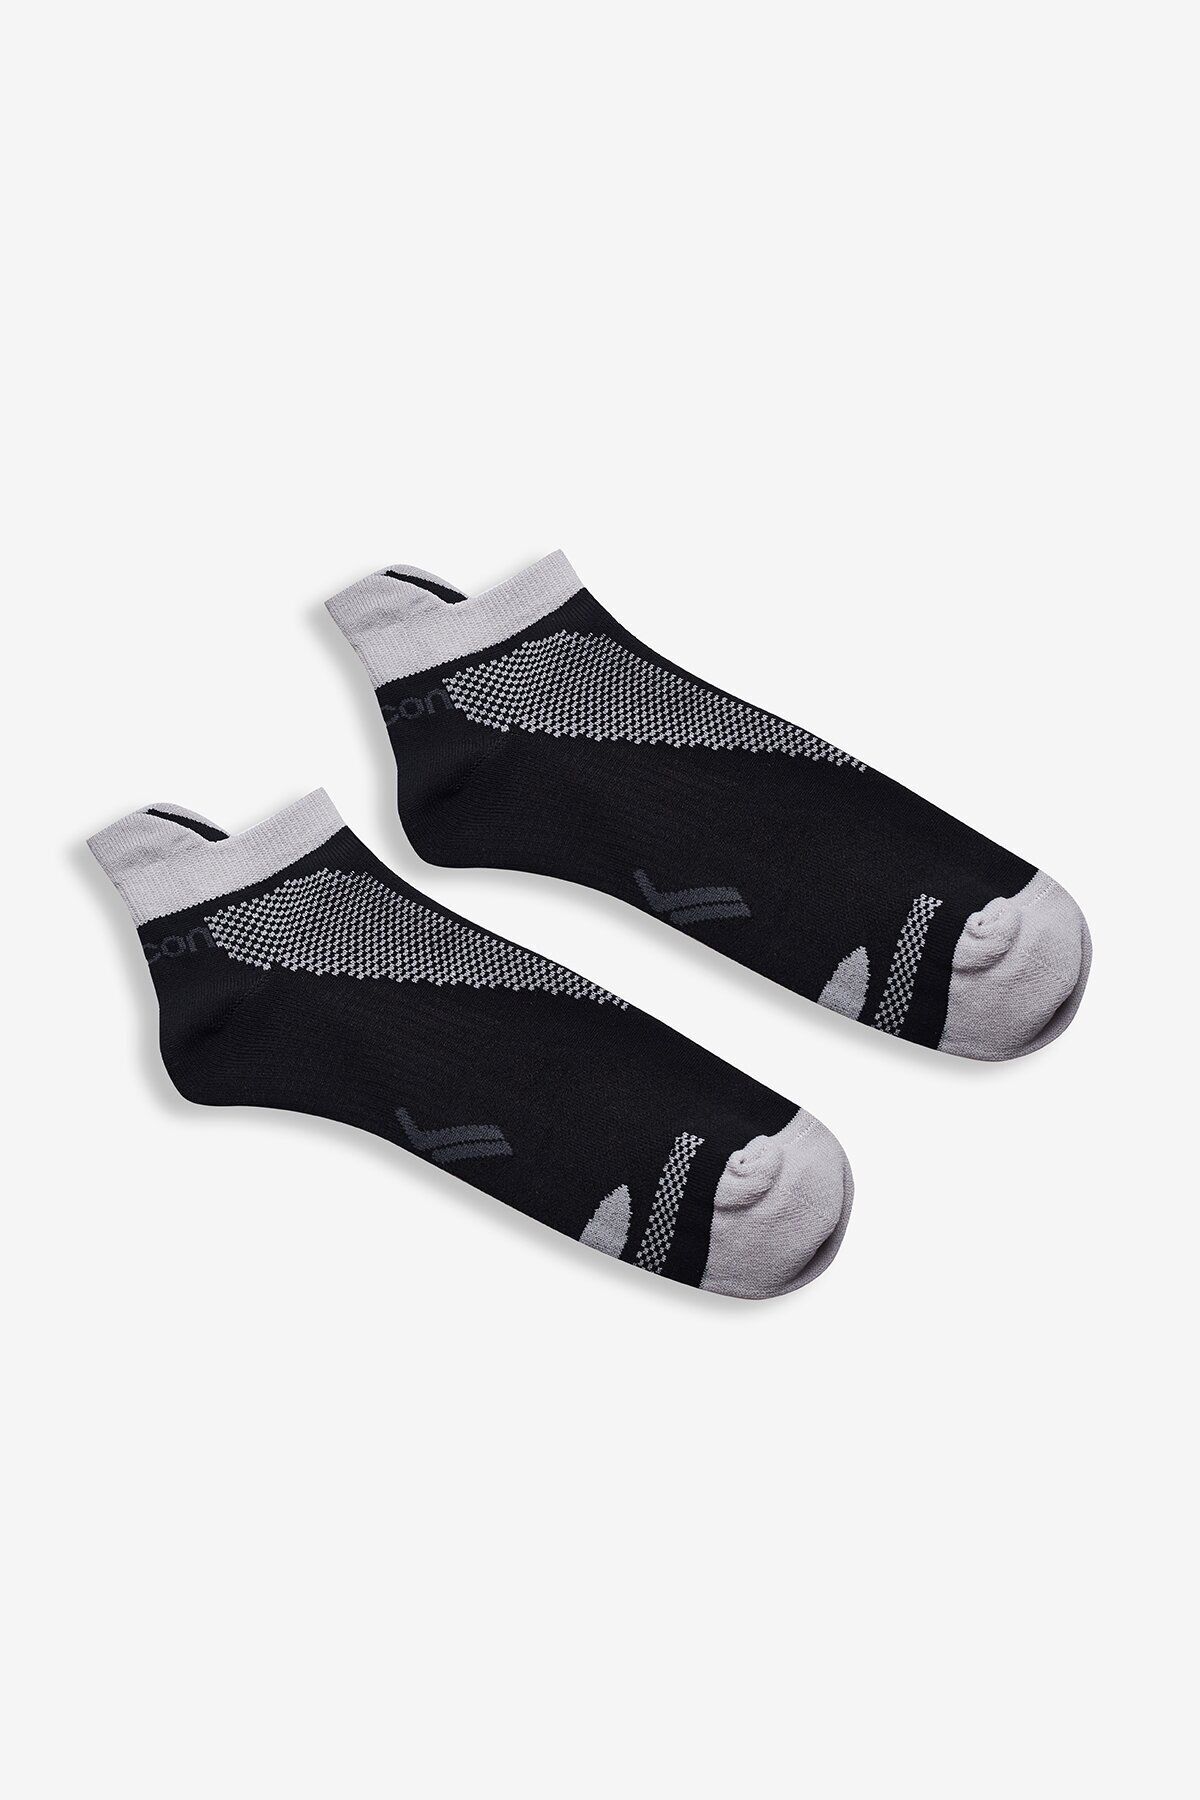 Lescon La-2190 Tekli Spor Çorabı 40-45 Numara